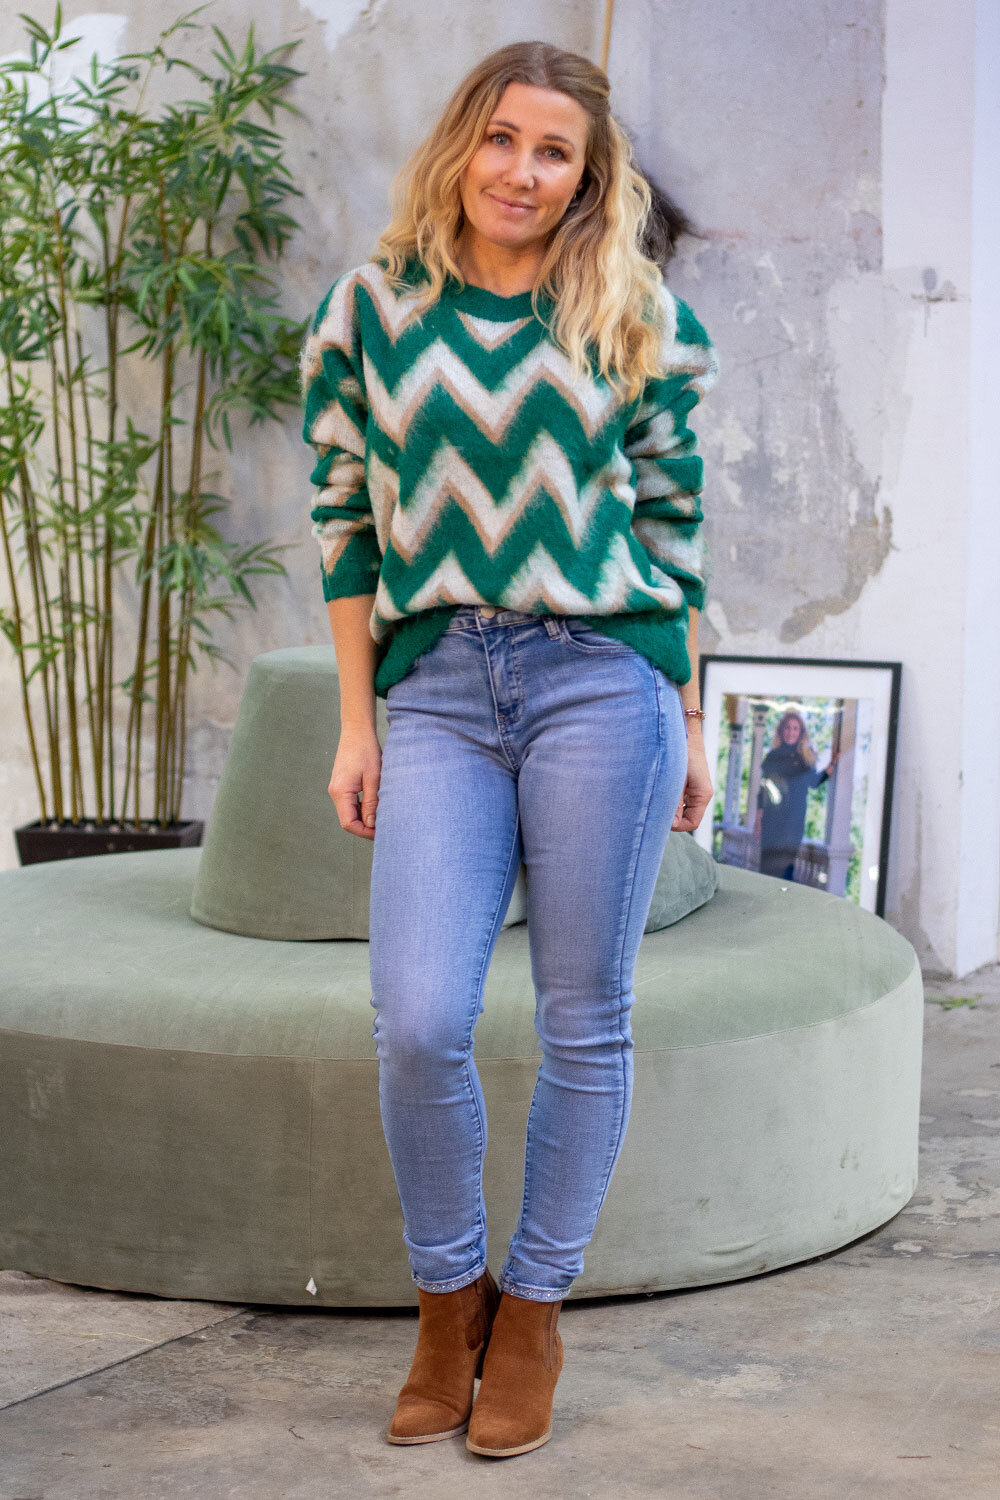 Larisa Knitted sweater - Zigzag - Green/Cream